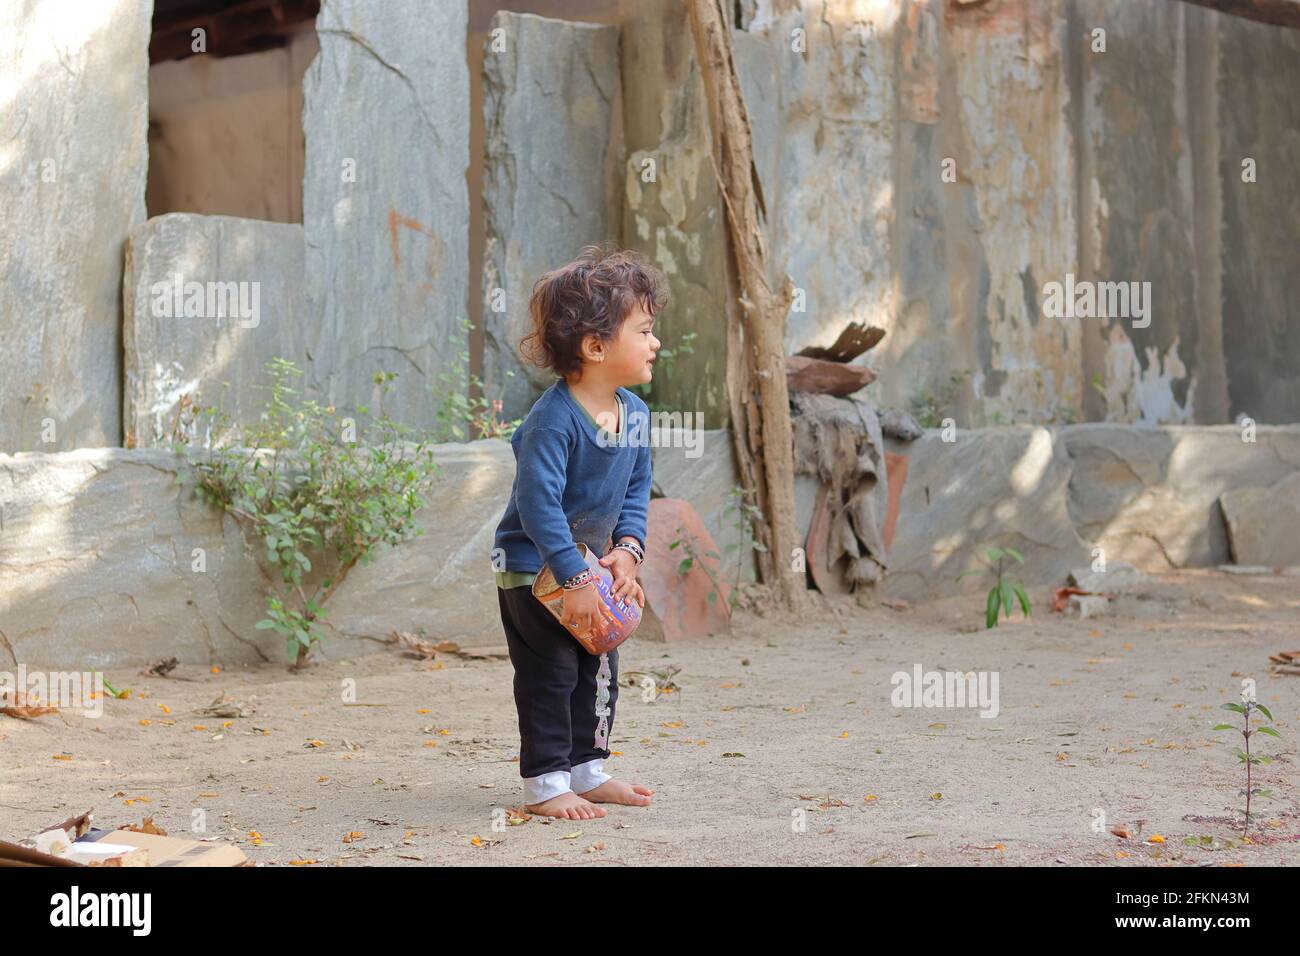 .Nahaufnahme Porträt eines asiatischen kleinen Jungen Kind spielt mit Sand und Dosen im Hof des Hauses.Konzept zur Kindheit, schöne indische Kind pla Stockfoto